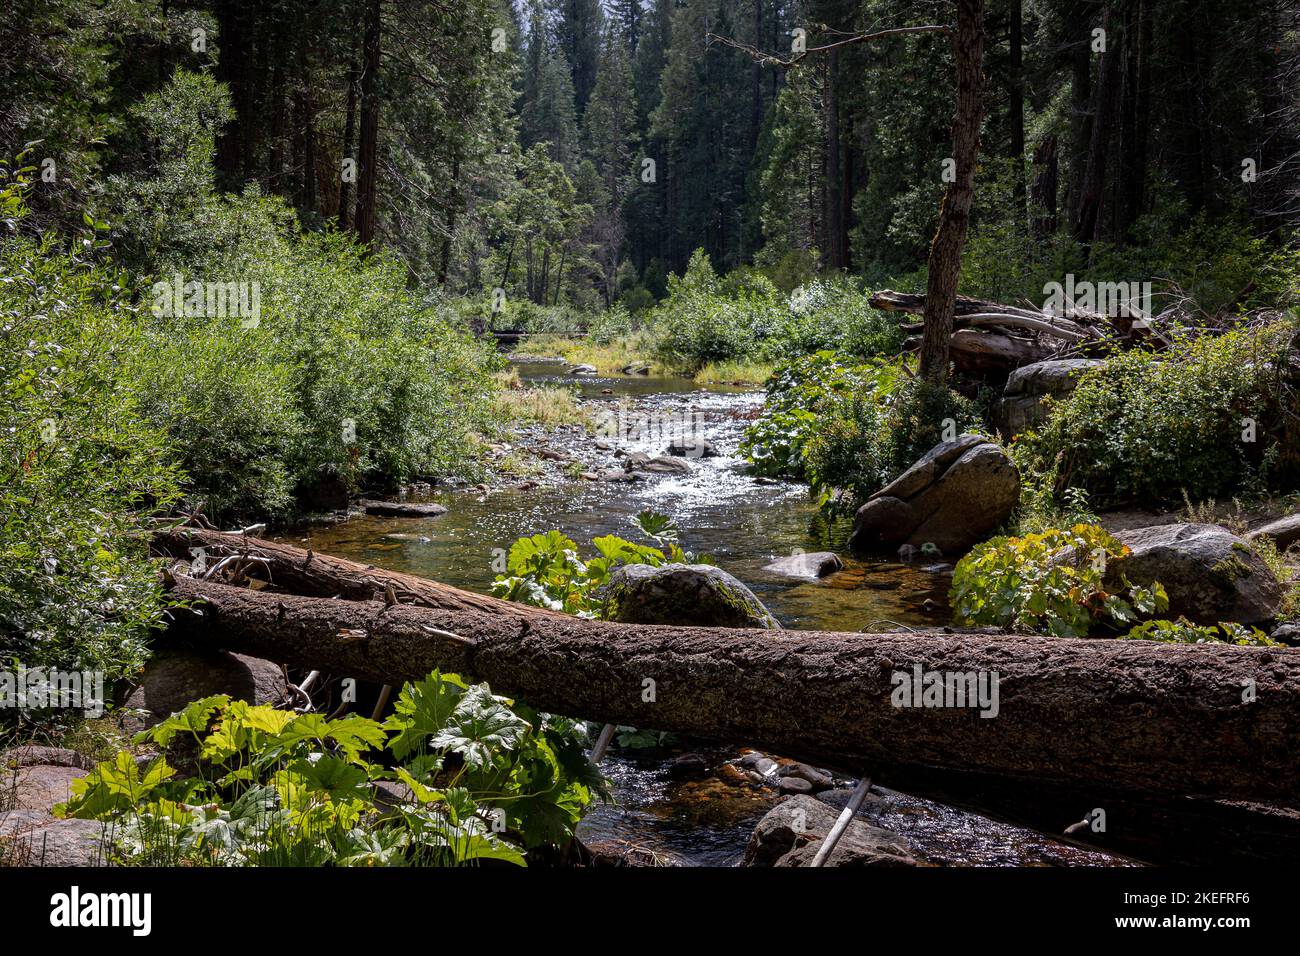 Splendido flusso fluente tra le verdi foreste del parco nazionale di Yosemite, California, USA Foto Stock